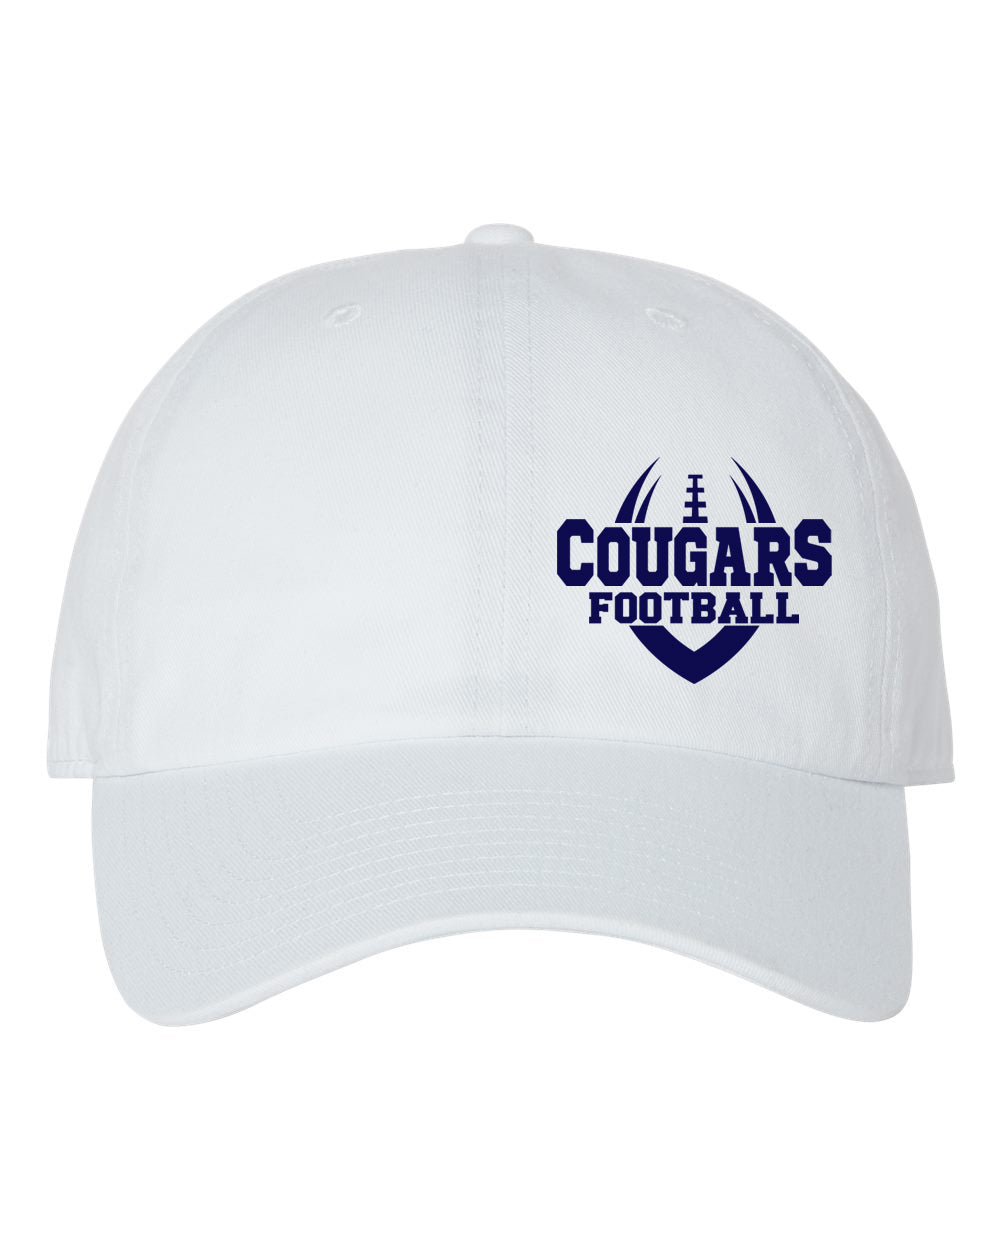 Kittatinny Football design 2 Trucker Hat